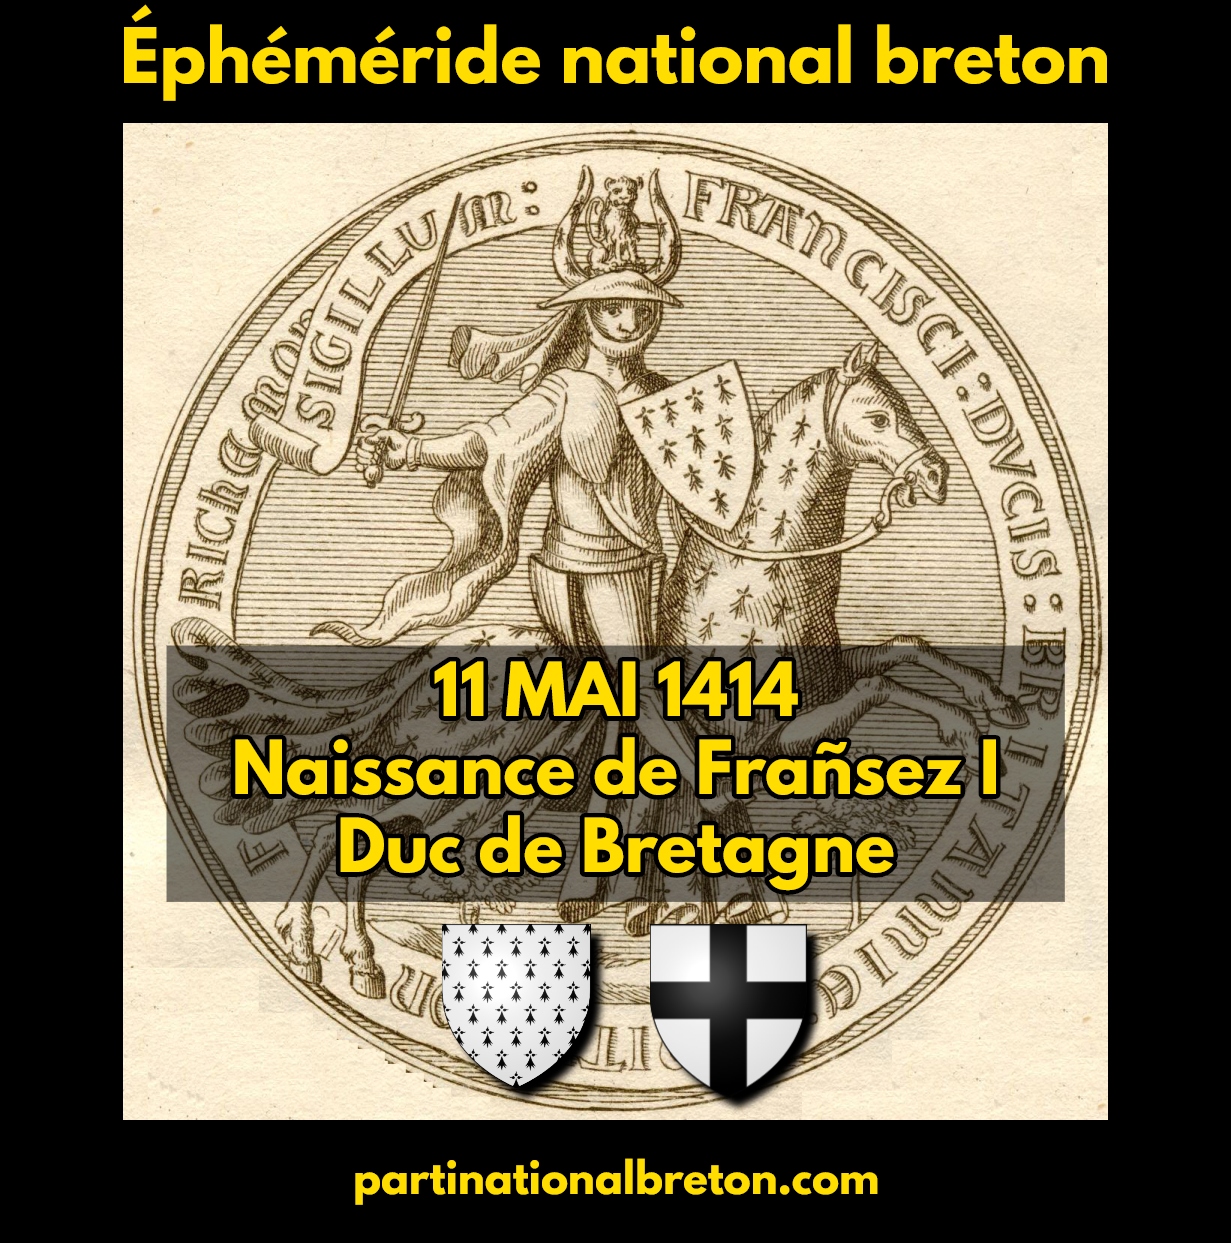 Éphéméride national breton : 11 mai 1414, naissance du souverain breton Frañsez I